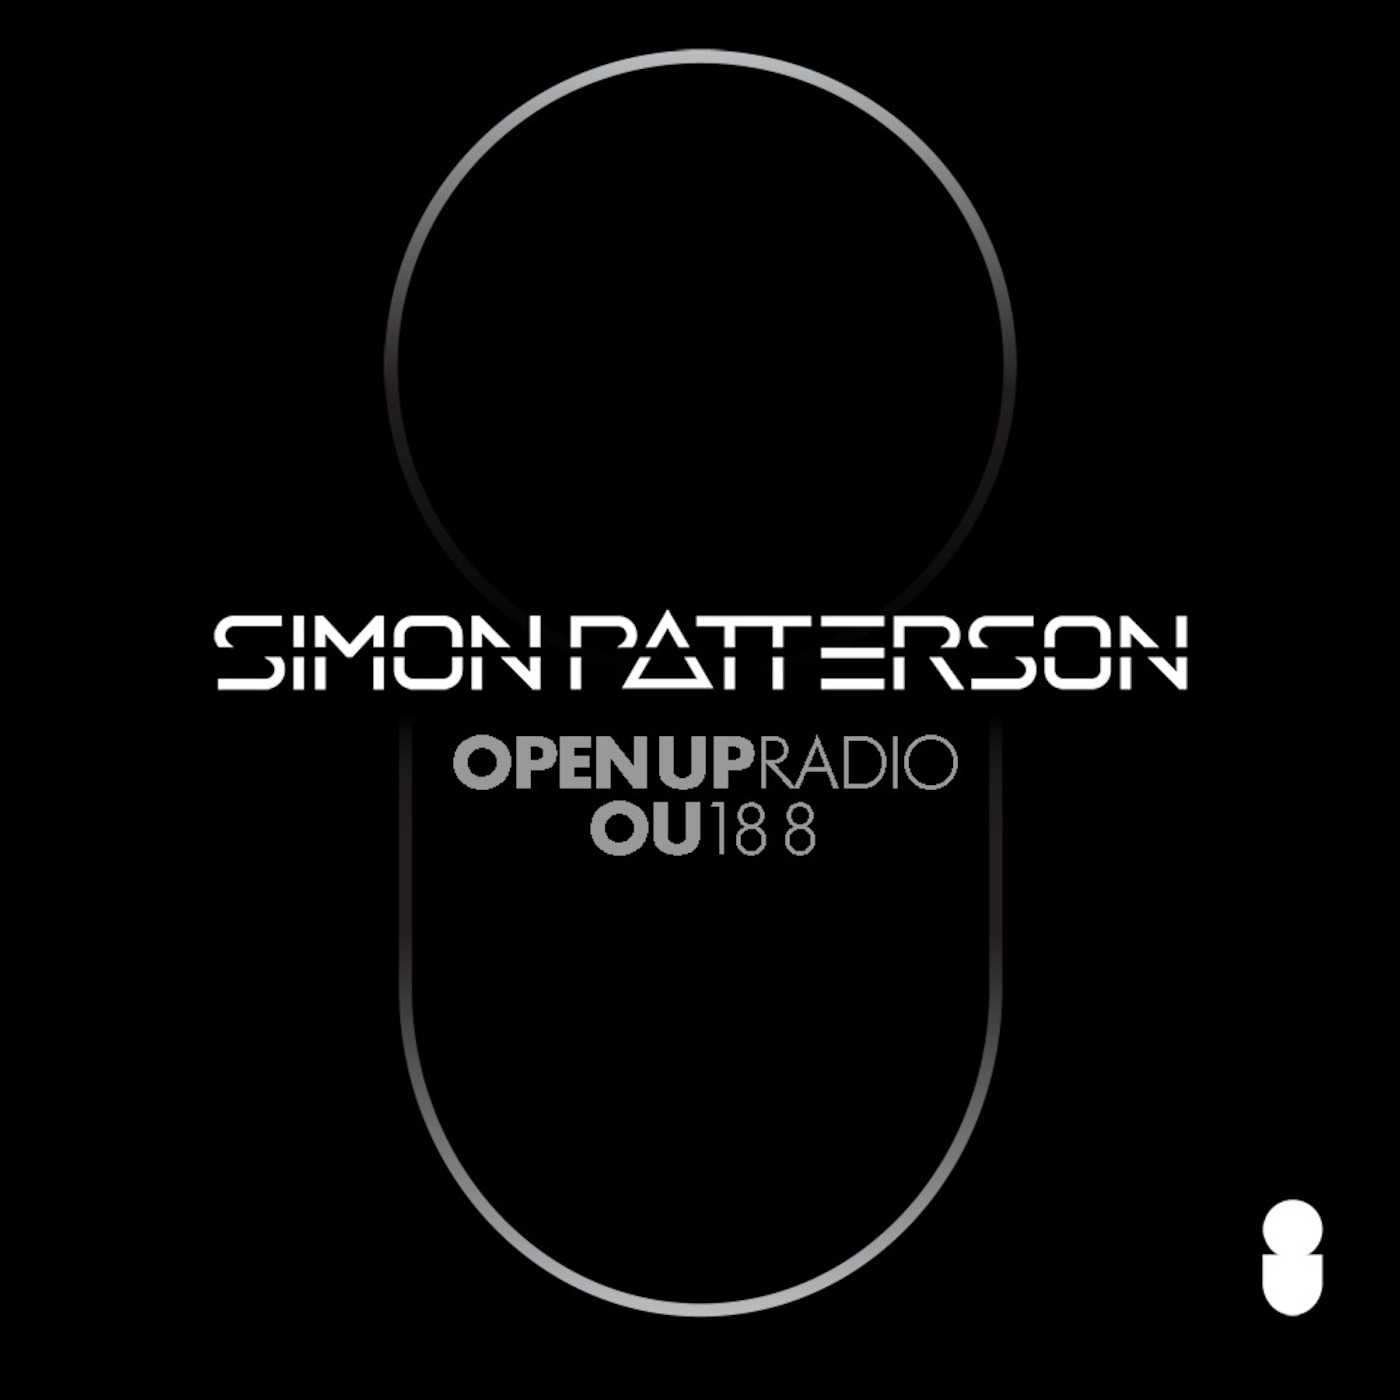 Simon Patterson - Open Up - 188